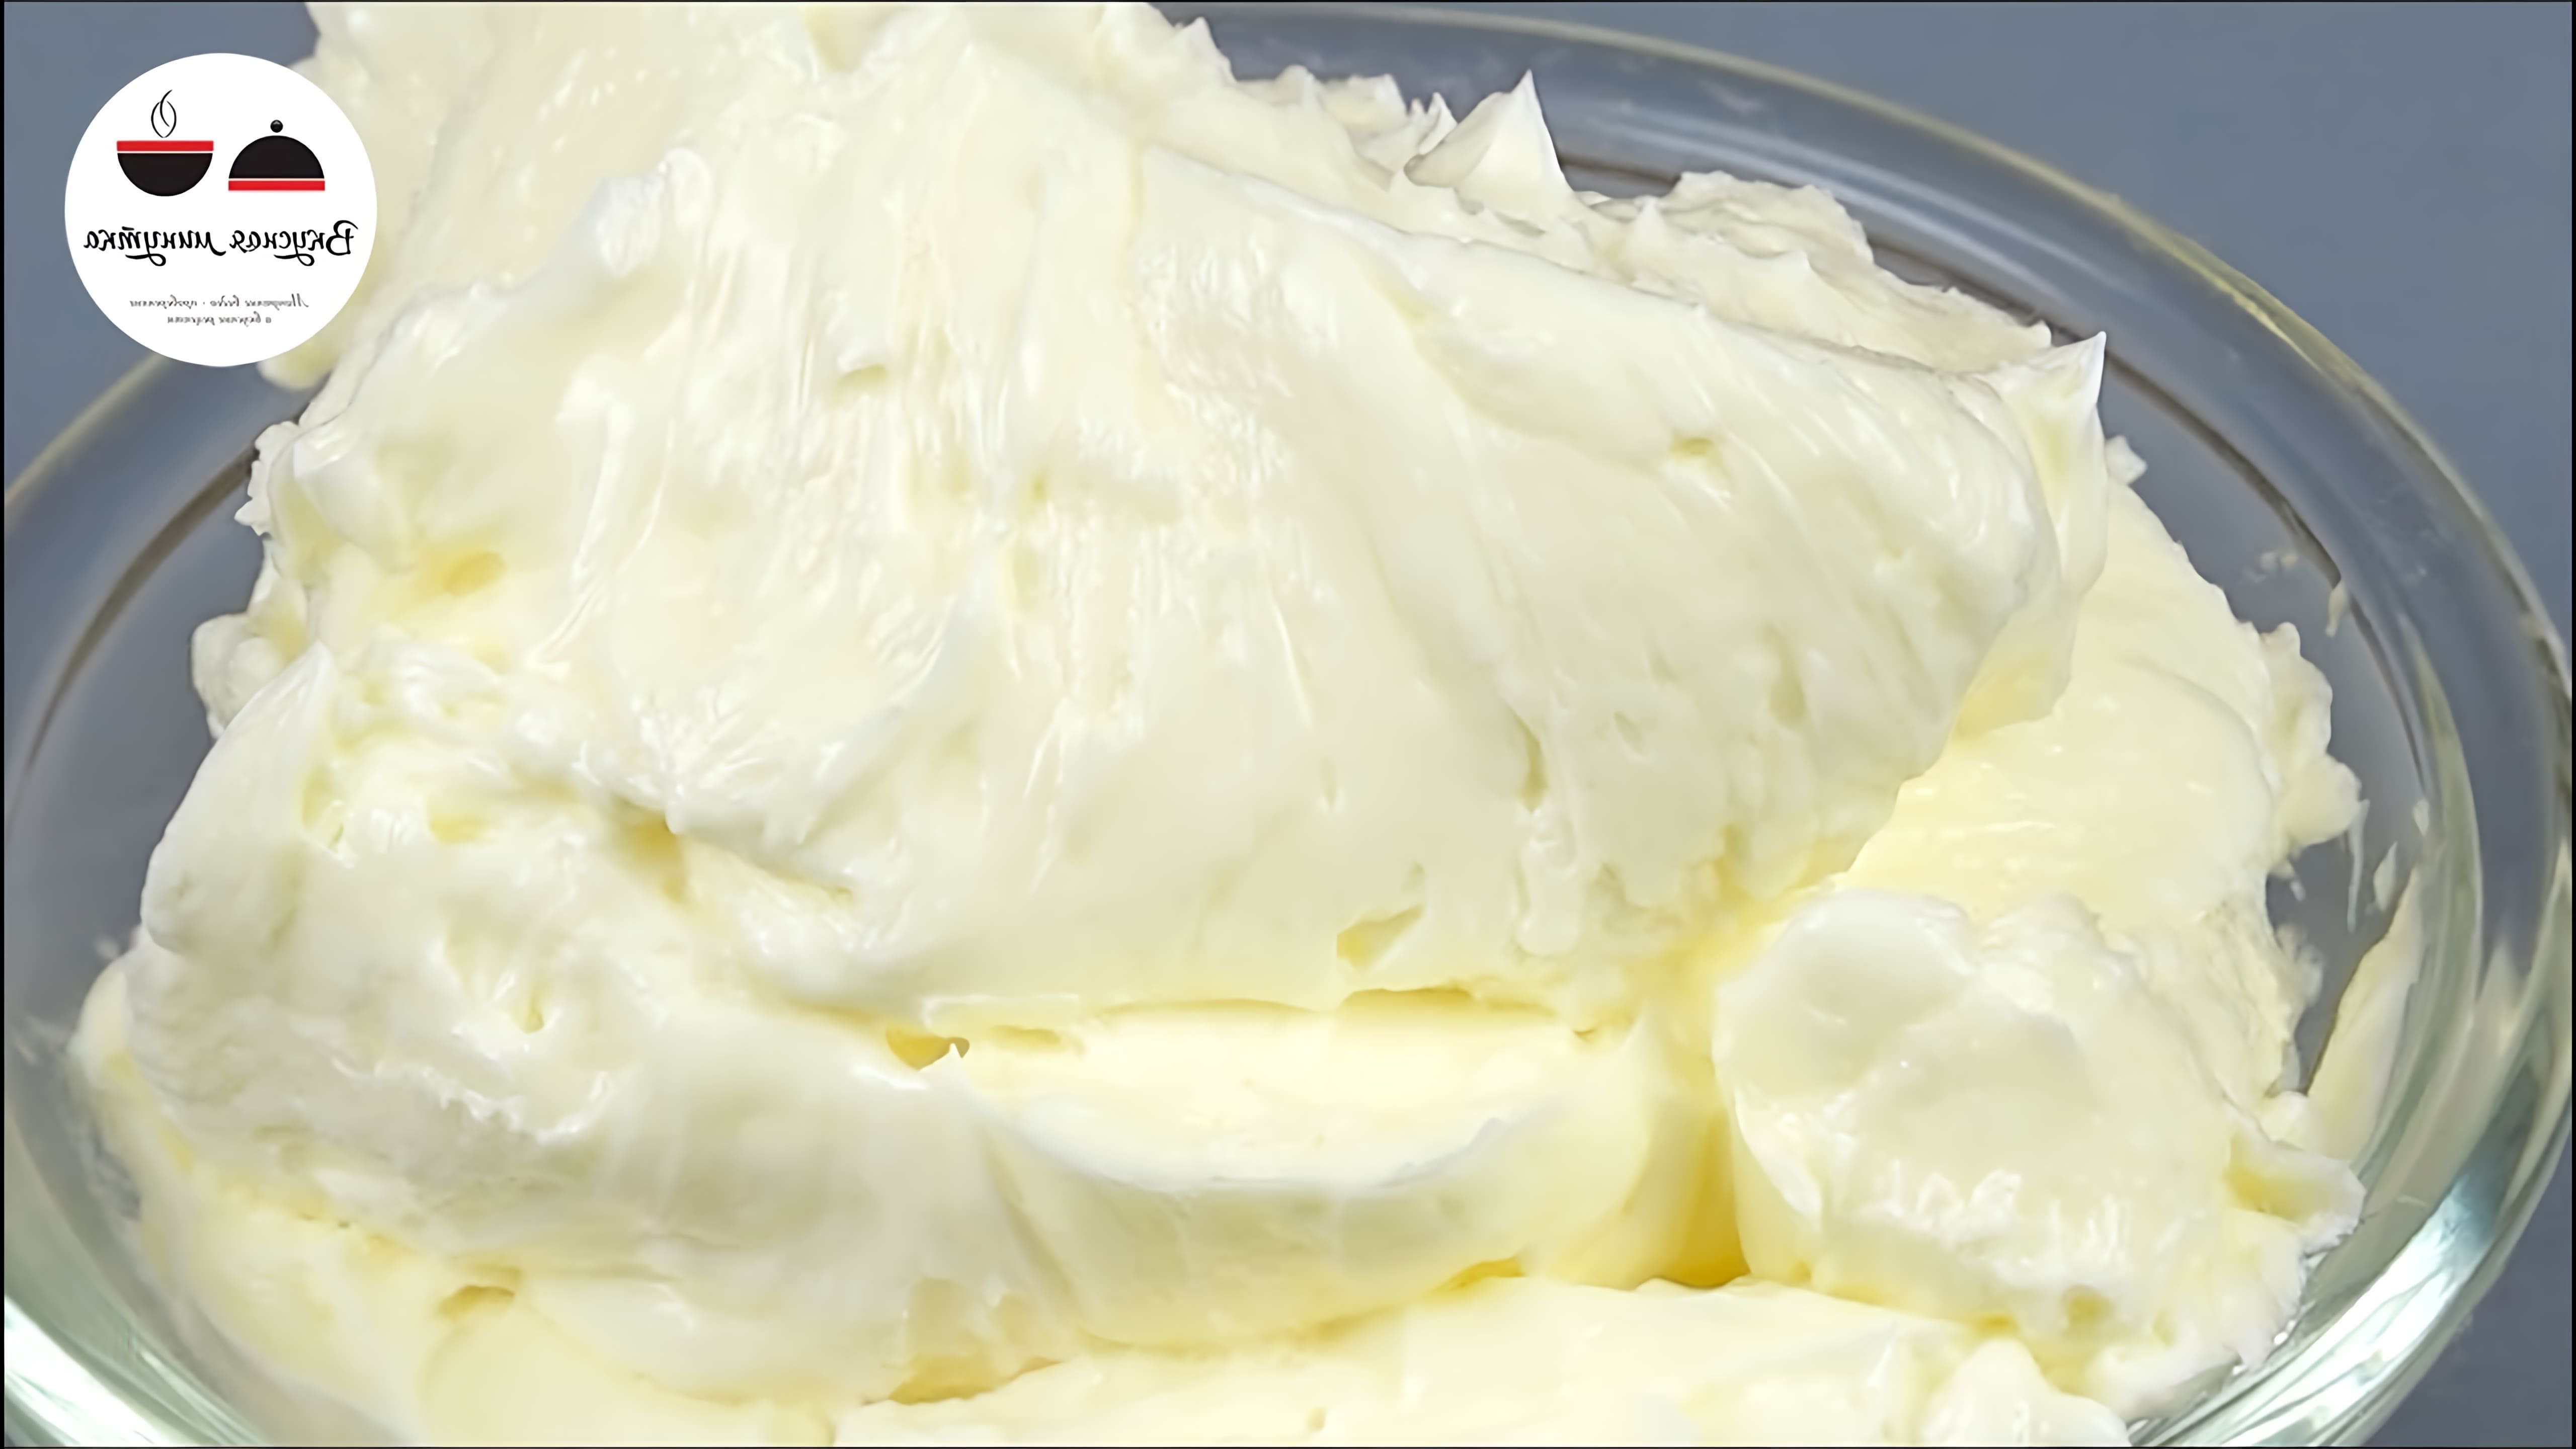 В этом видео-ролике будет показан рецепт приготовления нежного и воздушного сливочного крема, который идеально подходит для украшения тортов и пирожных